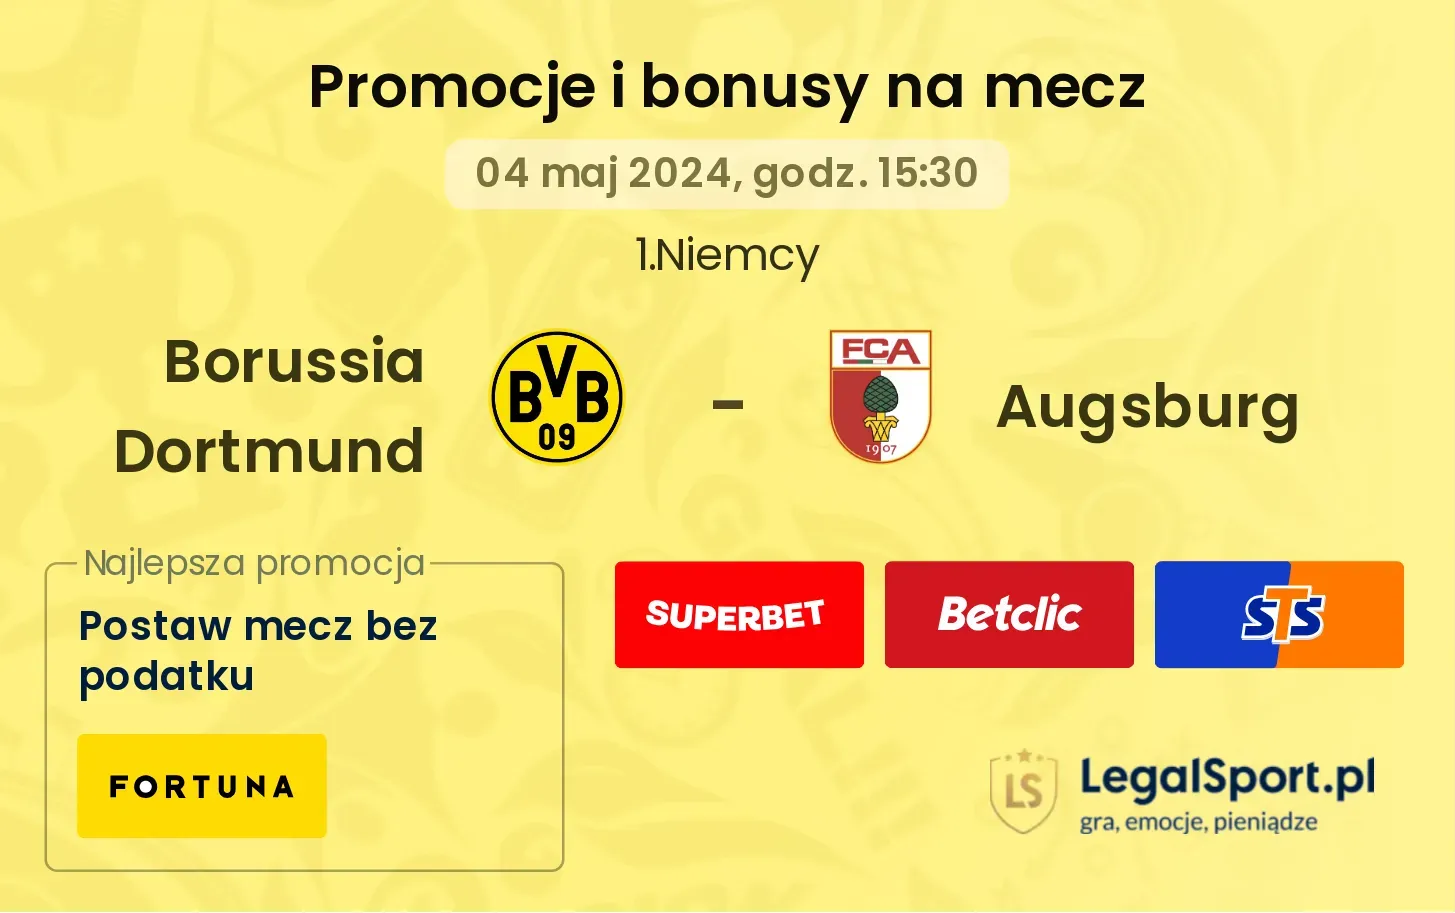 Borussia Dortmund - Augsburg promocje bonusy na mecz